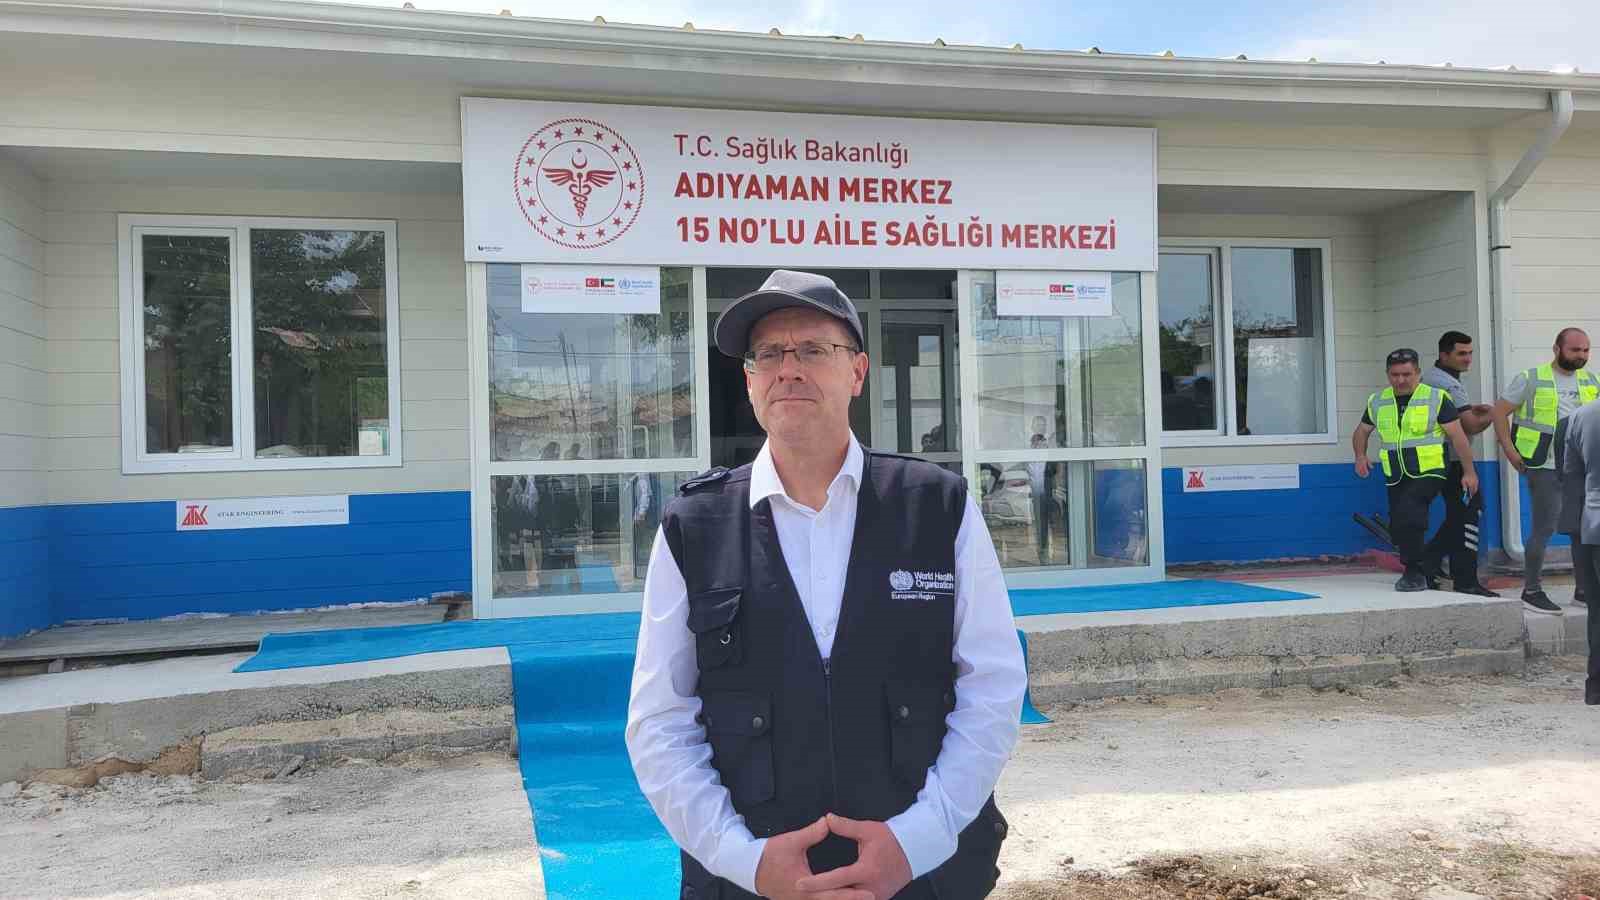 DS Avrupa Blge Direktr Dr. Hans Klugeden Trkiyeye Gazze teekkr
